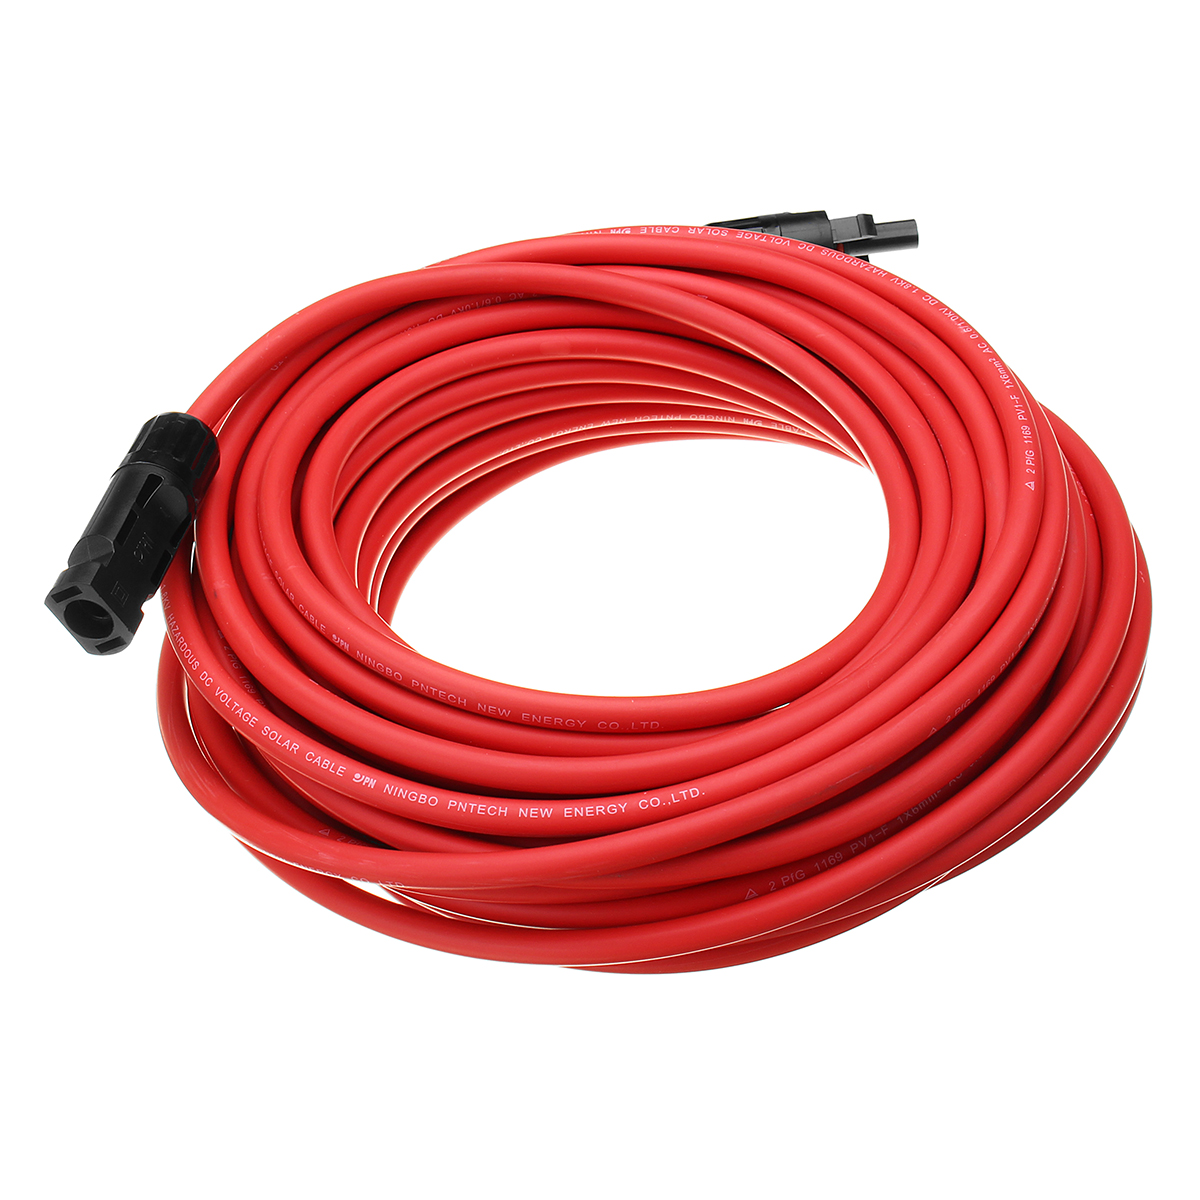 Pvc 30. 10 AWG кабель. 15awg. У насоса красный и черный шнур. AWG 10 С изоляцией.